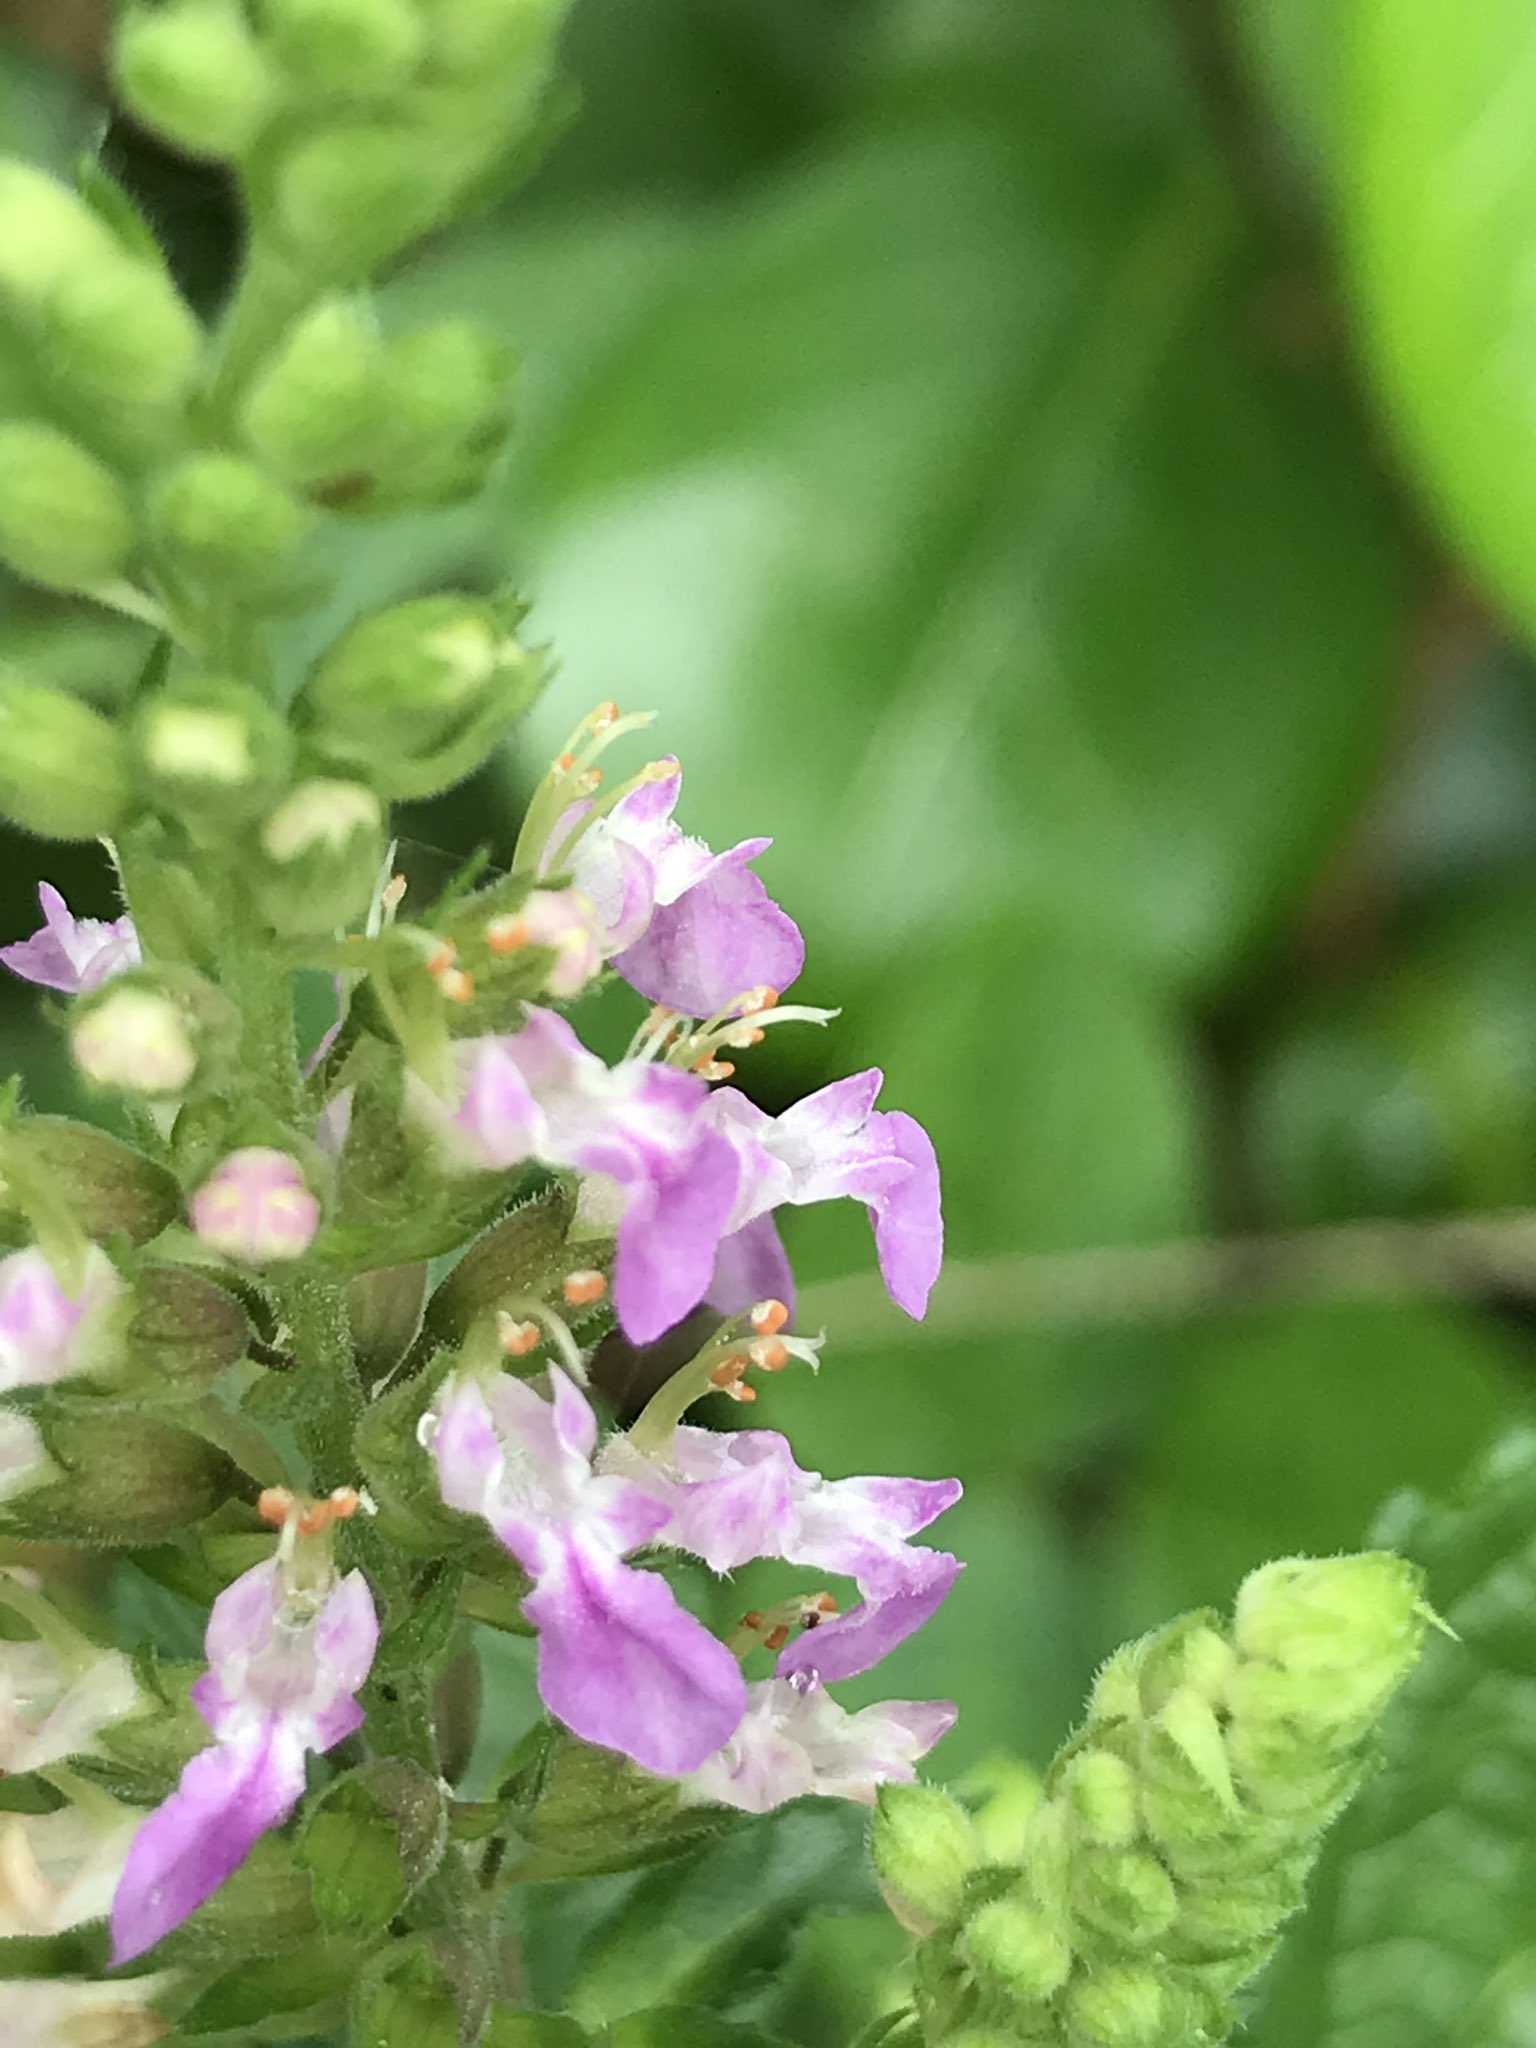 ヒメ ニガクサ の花が咲いてきました シソ科の夏の花 ピンク色の花だけど 藪の雑草の中で目立たずひっそりと踏みつけられていました で 苦いかどうか噛むのやめました T Co S7bchb4rwc Twitter